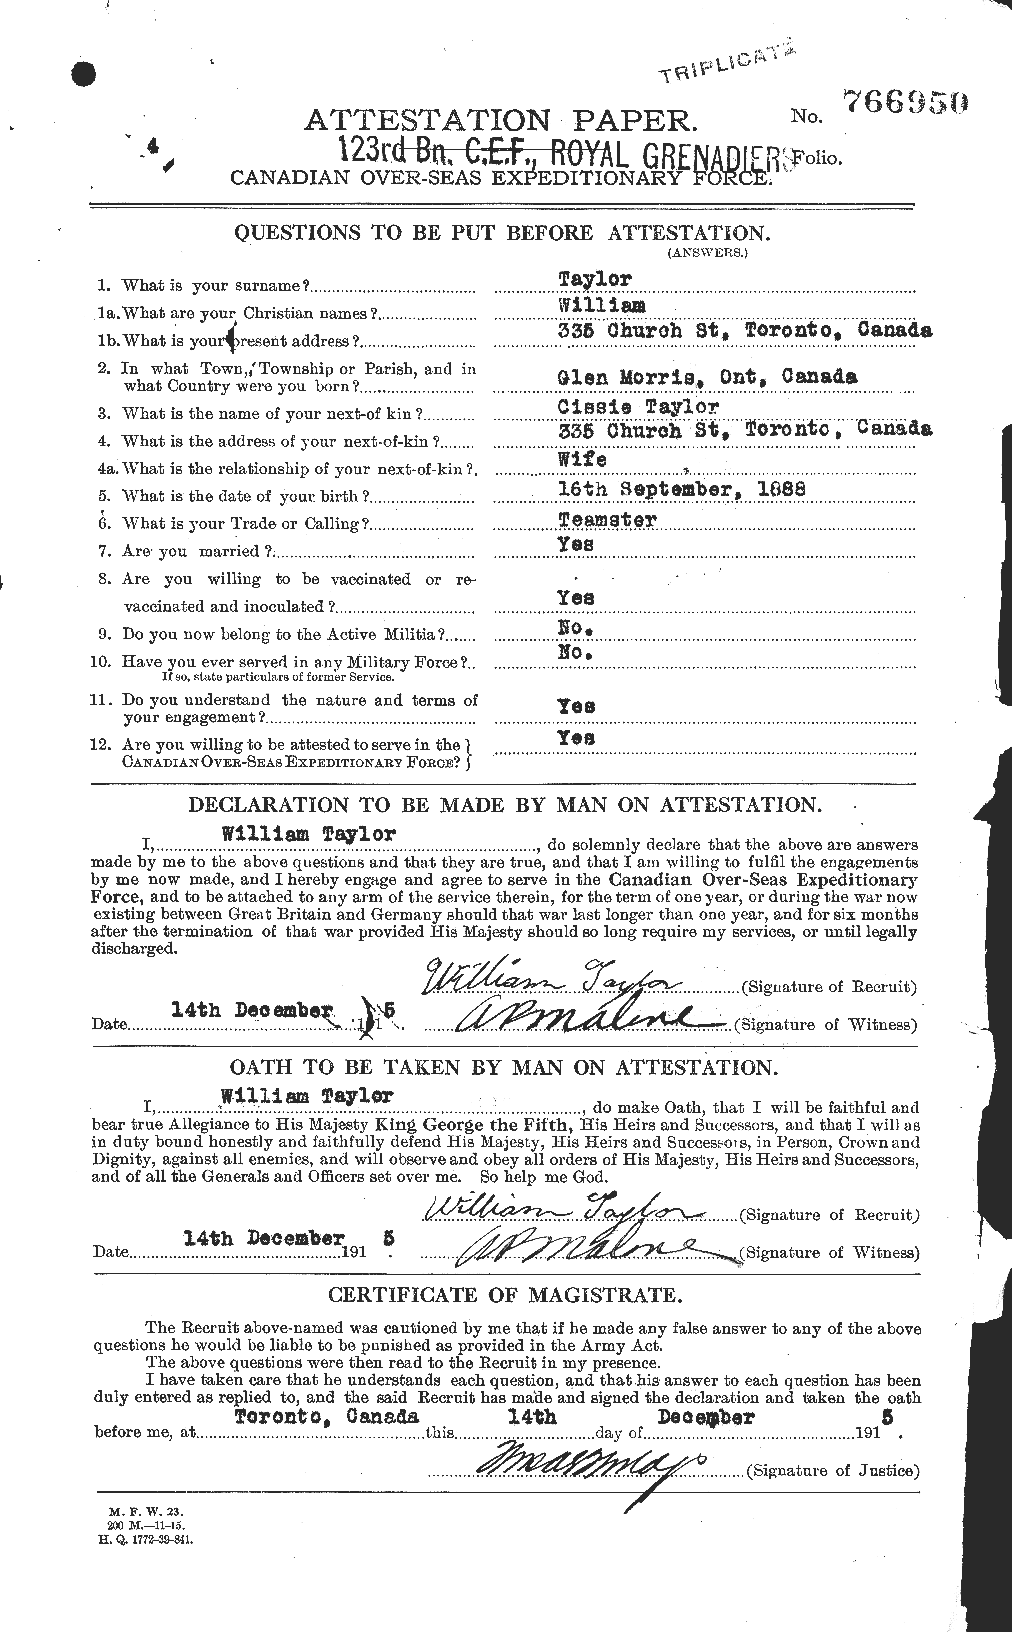 Dossiers du Personnel de la Première Guerre mondiale - CEC 628151a